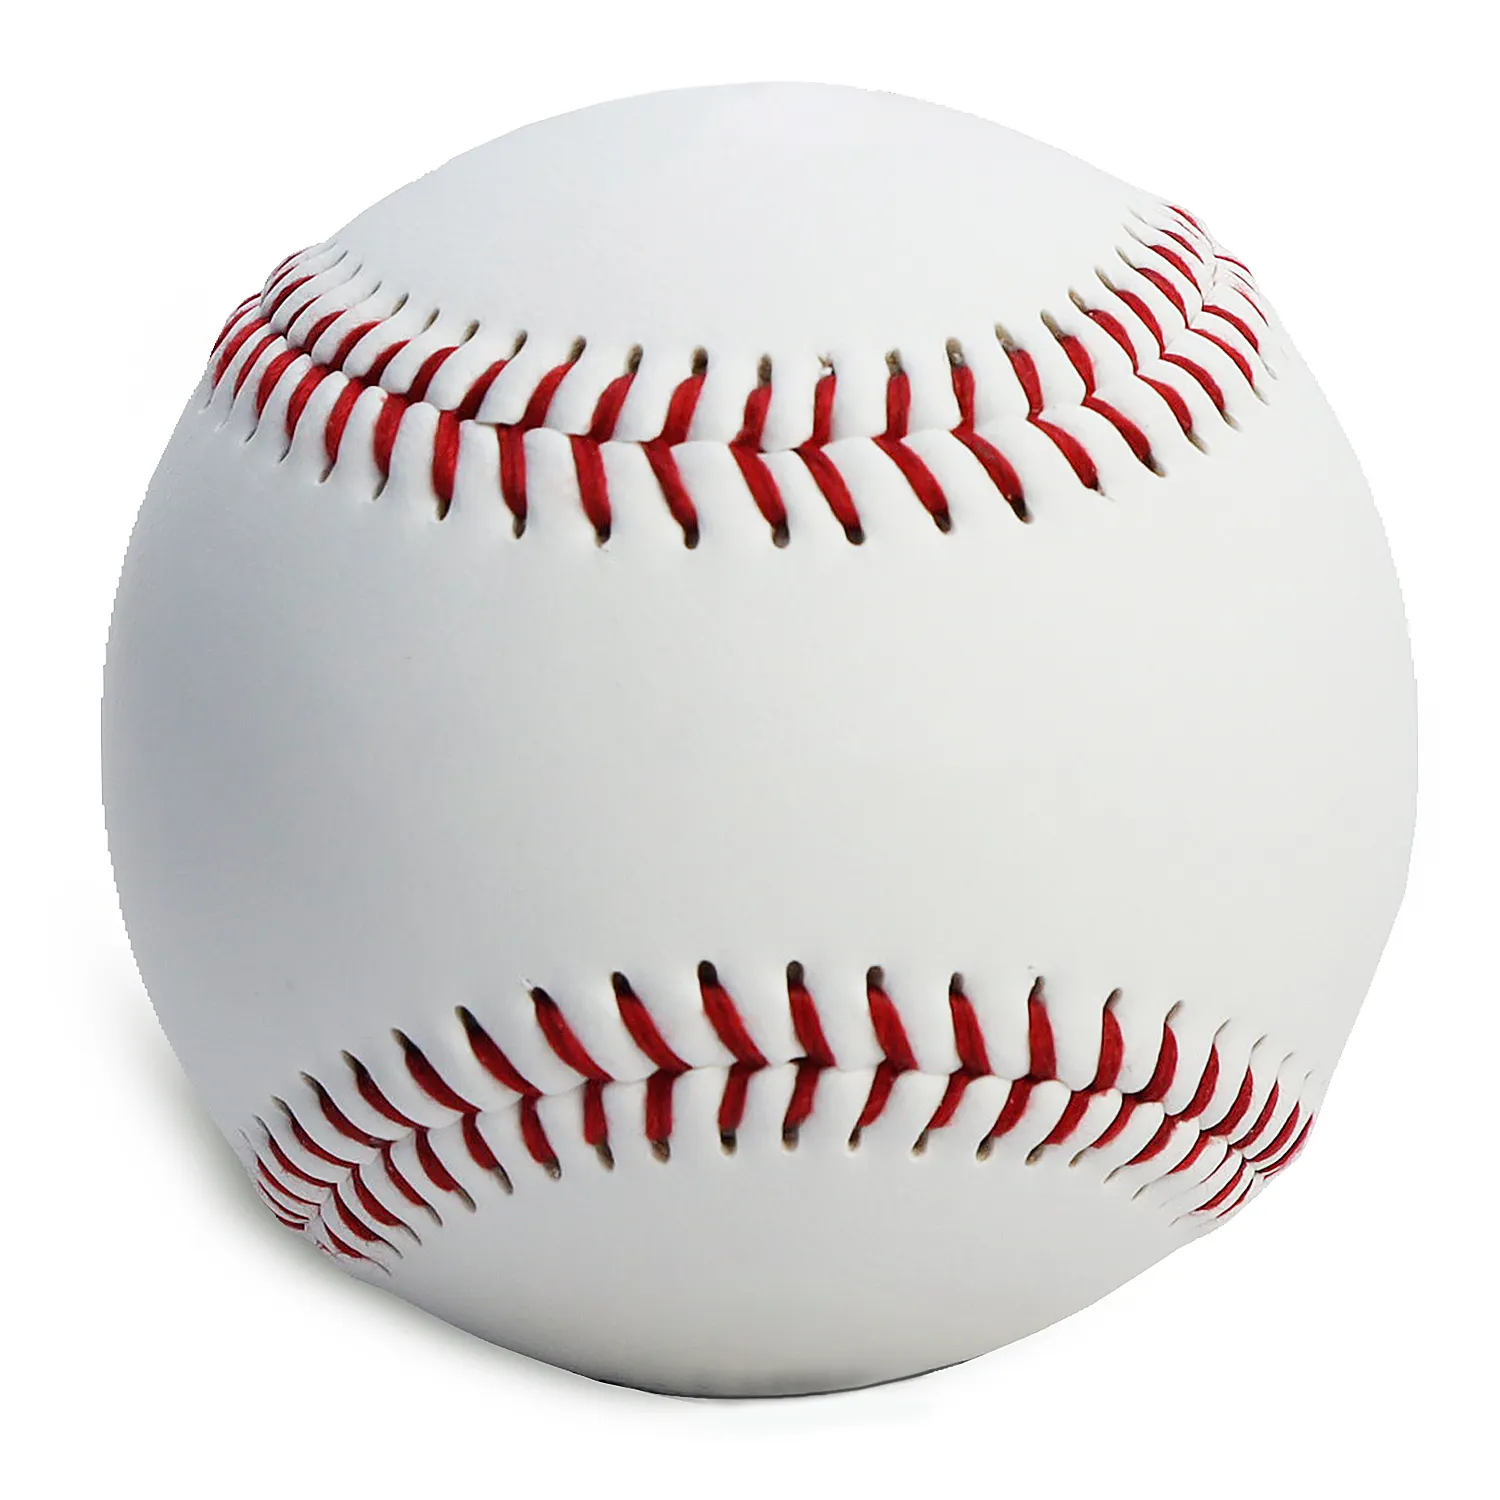 Baseball in pelle PVC sintetica promozionale professionale di alta qualità,